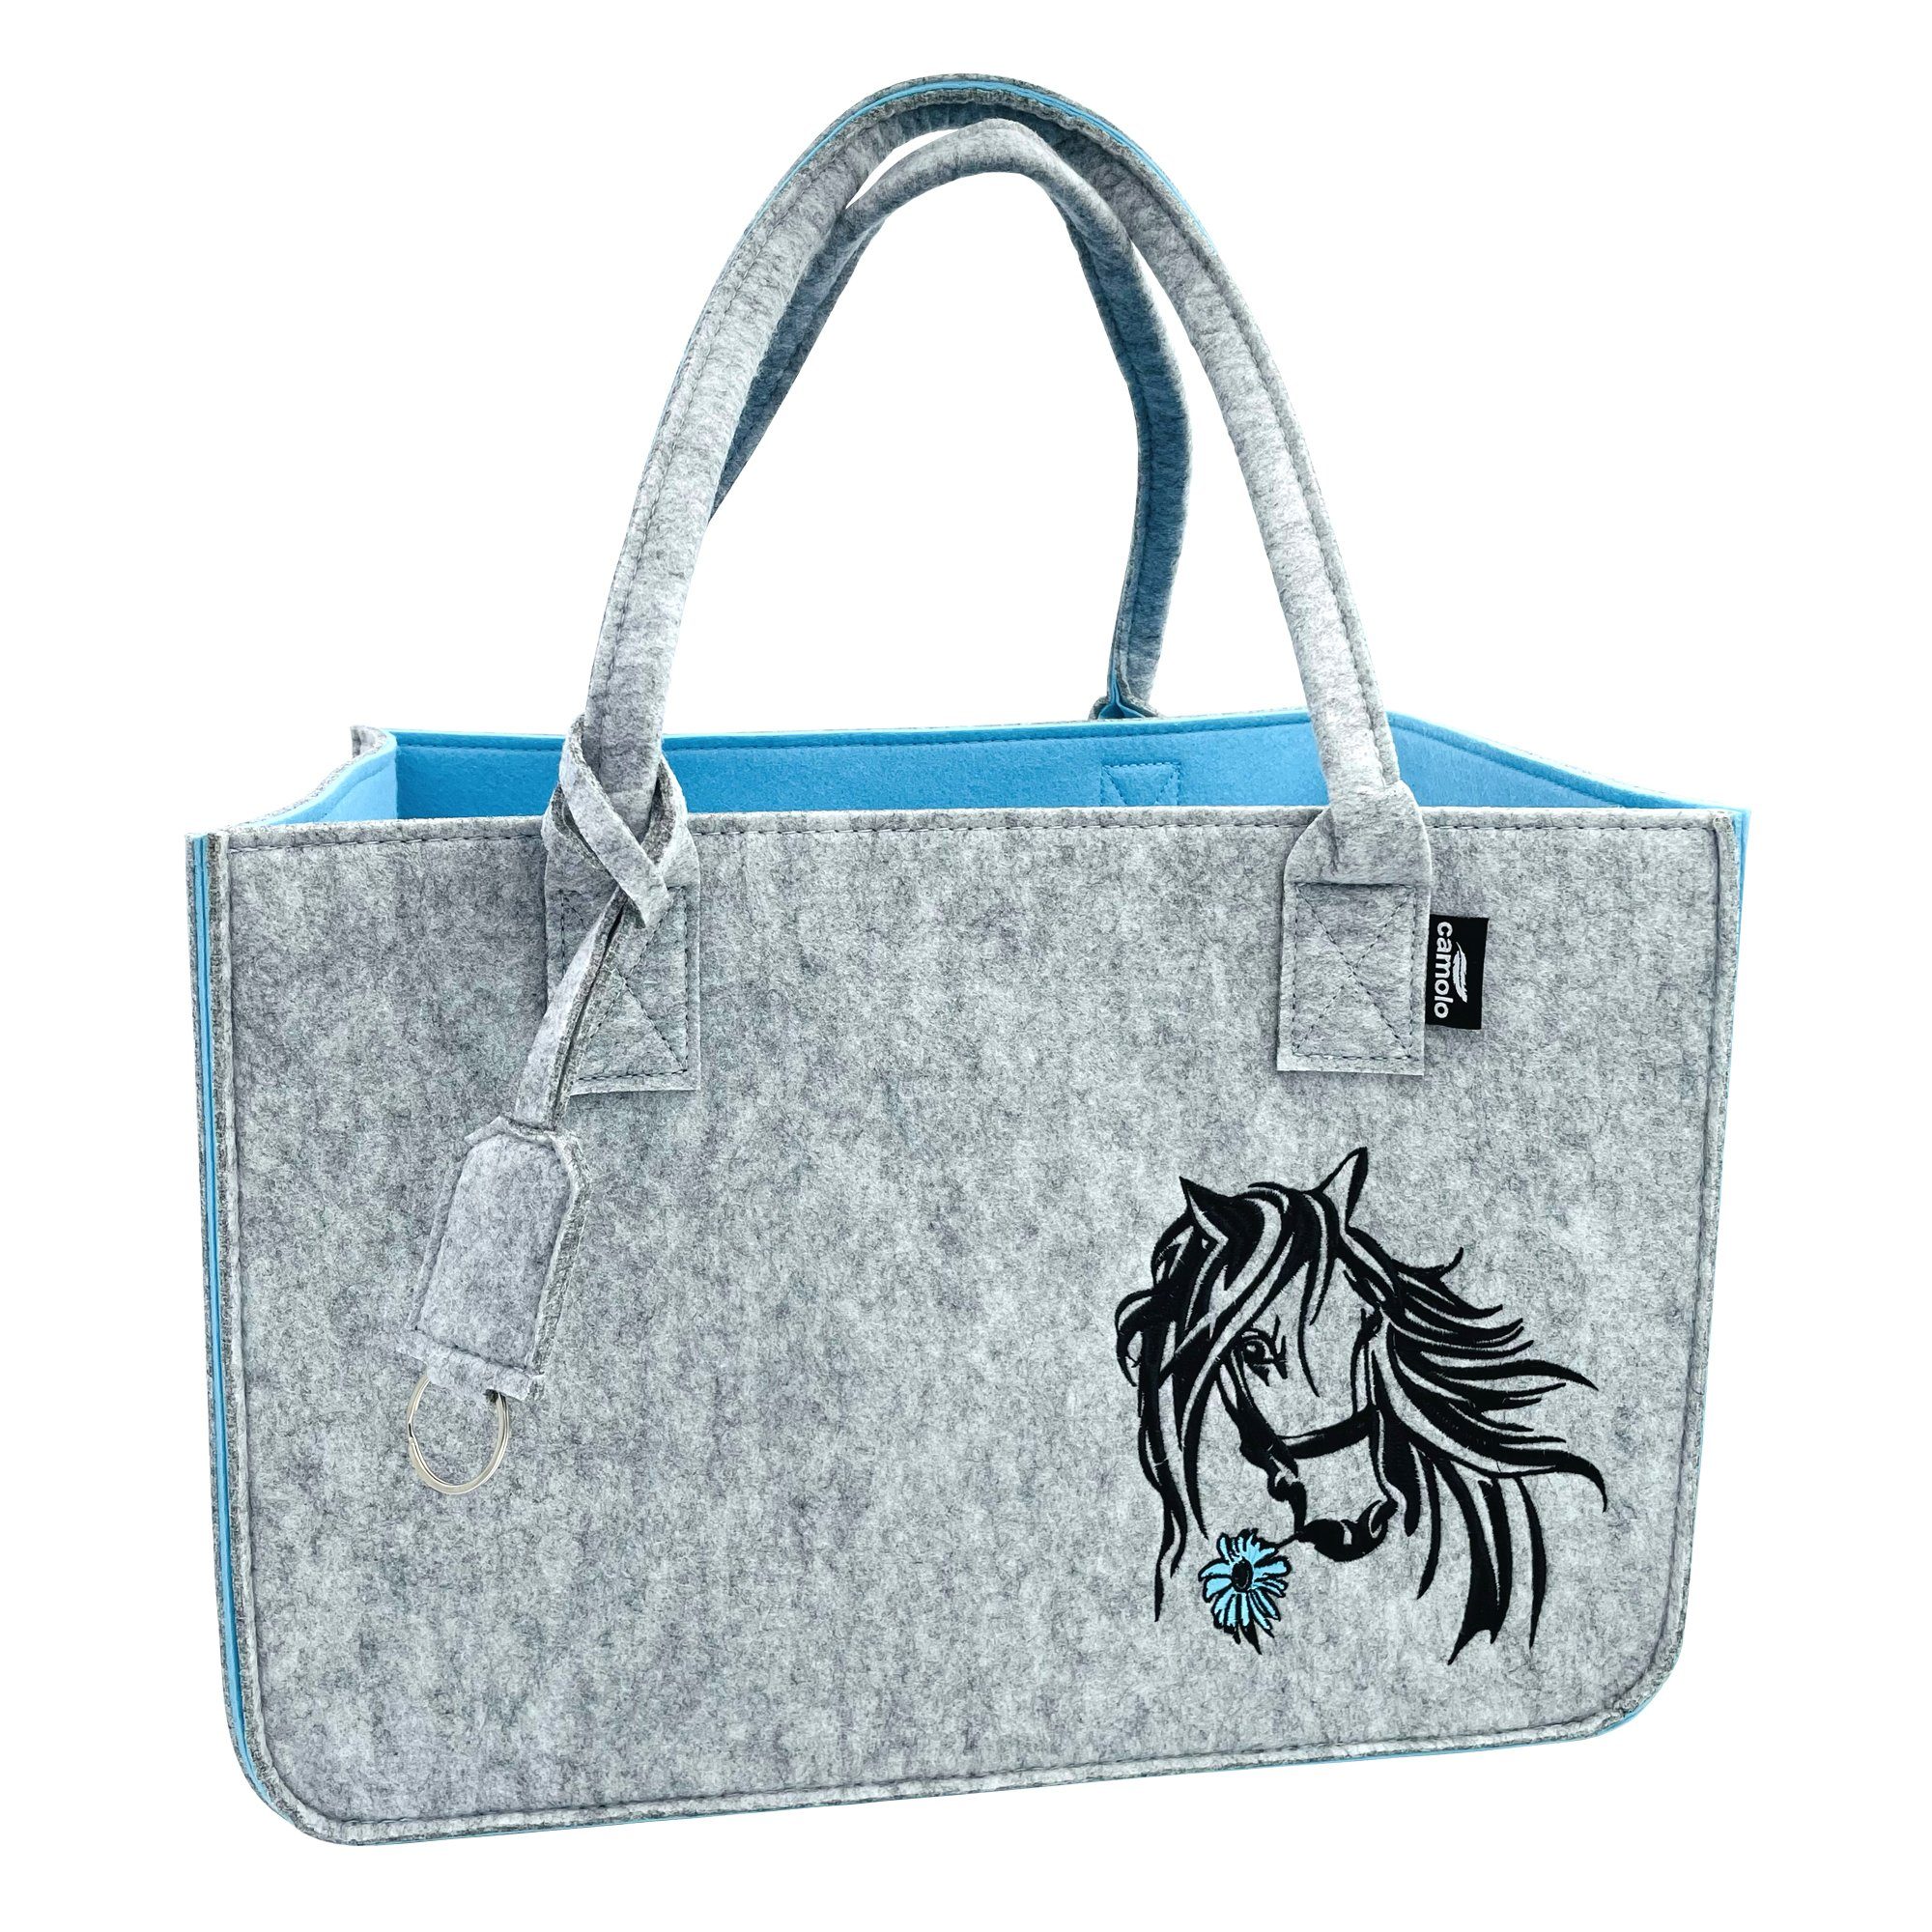 Camolo Tragetasche Filz Einkaufstasche Horse mit Henkel Grau/Blau | Tragetaschen